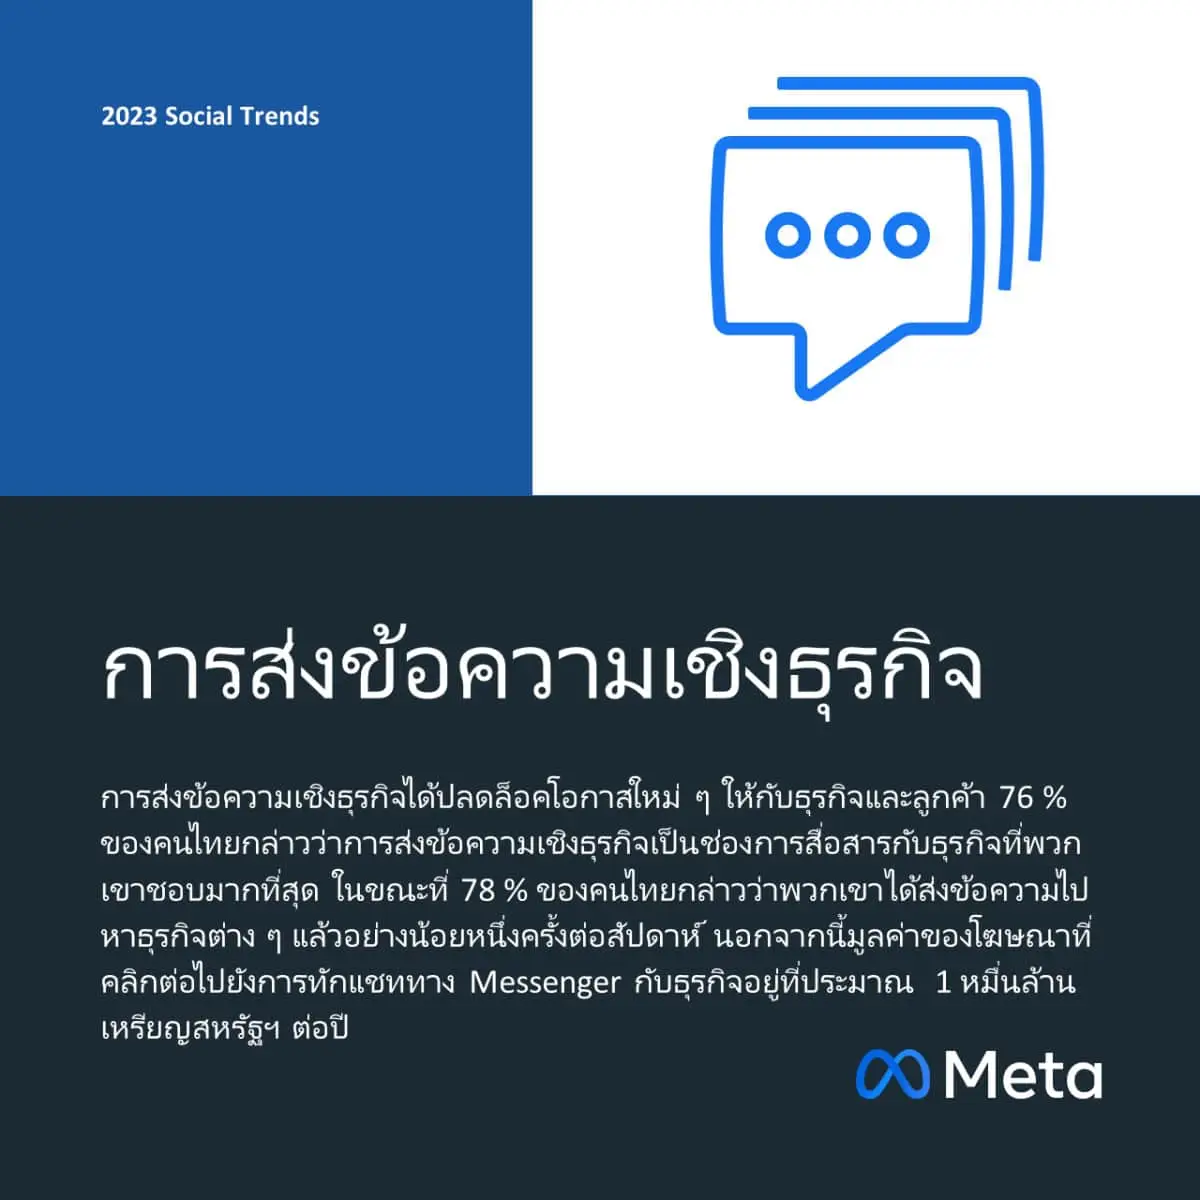 meta-7-social-trends-for-2023-messenger